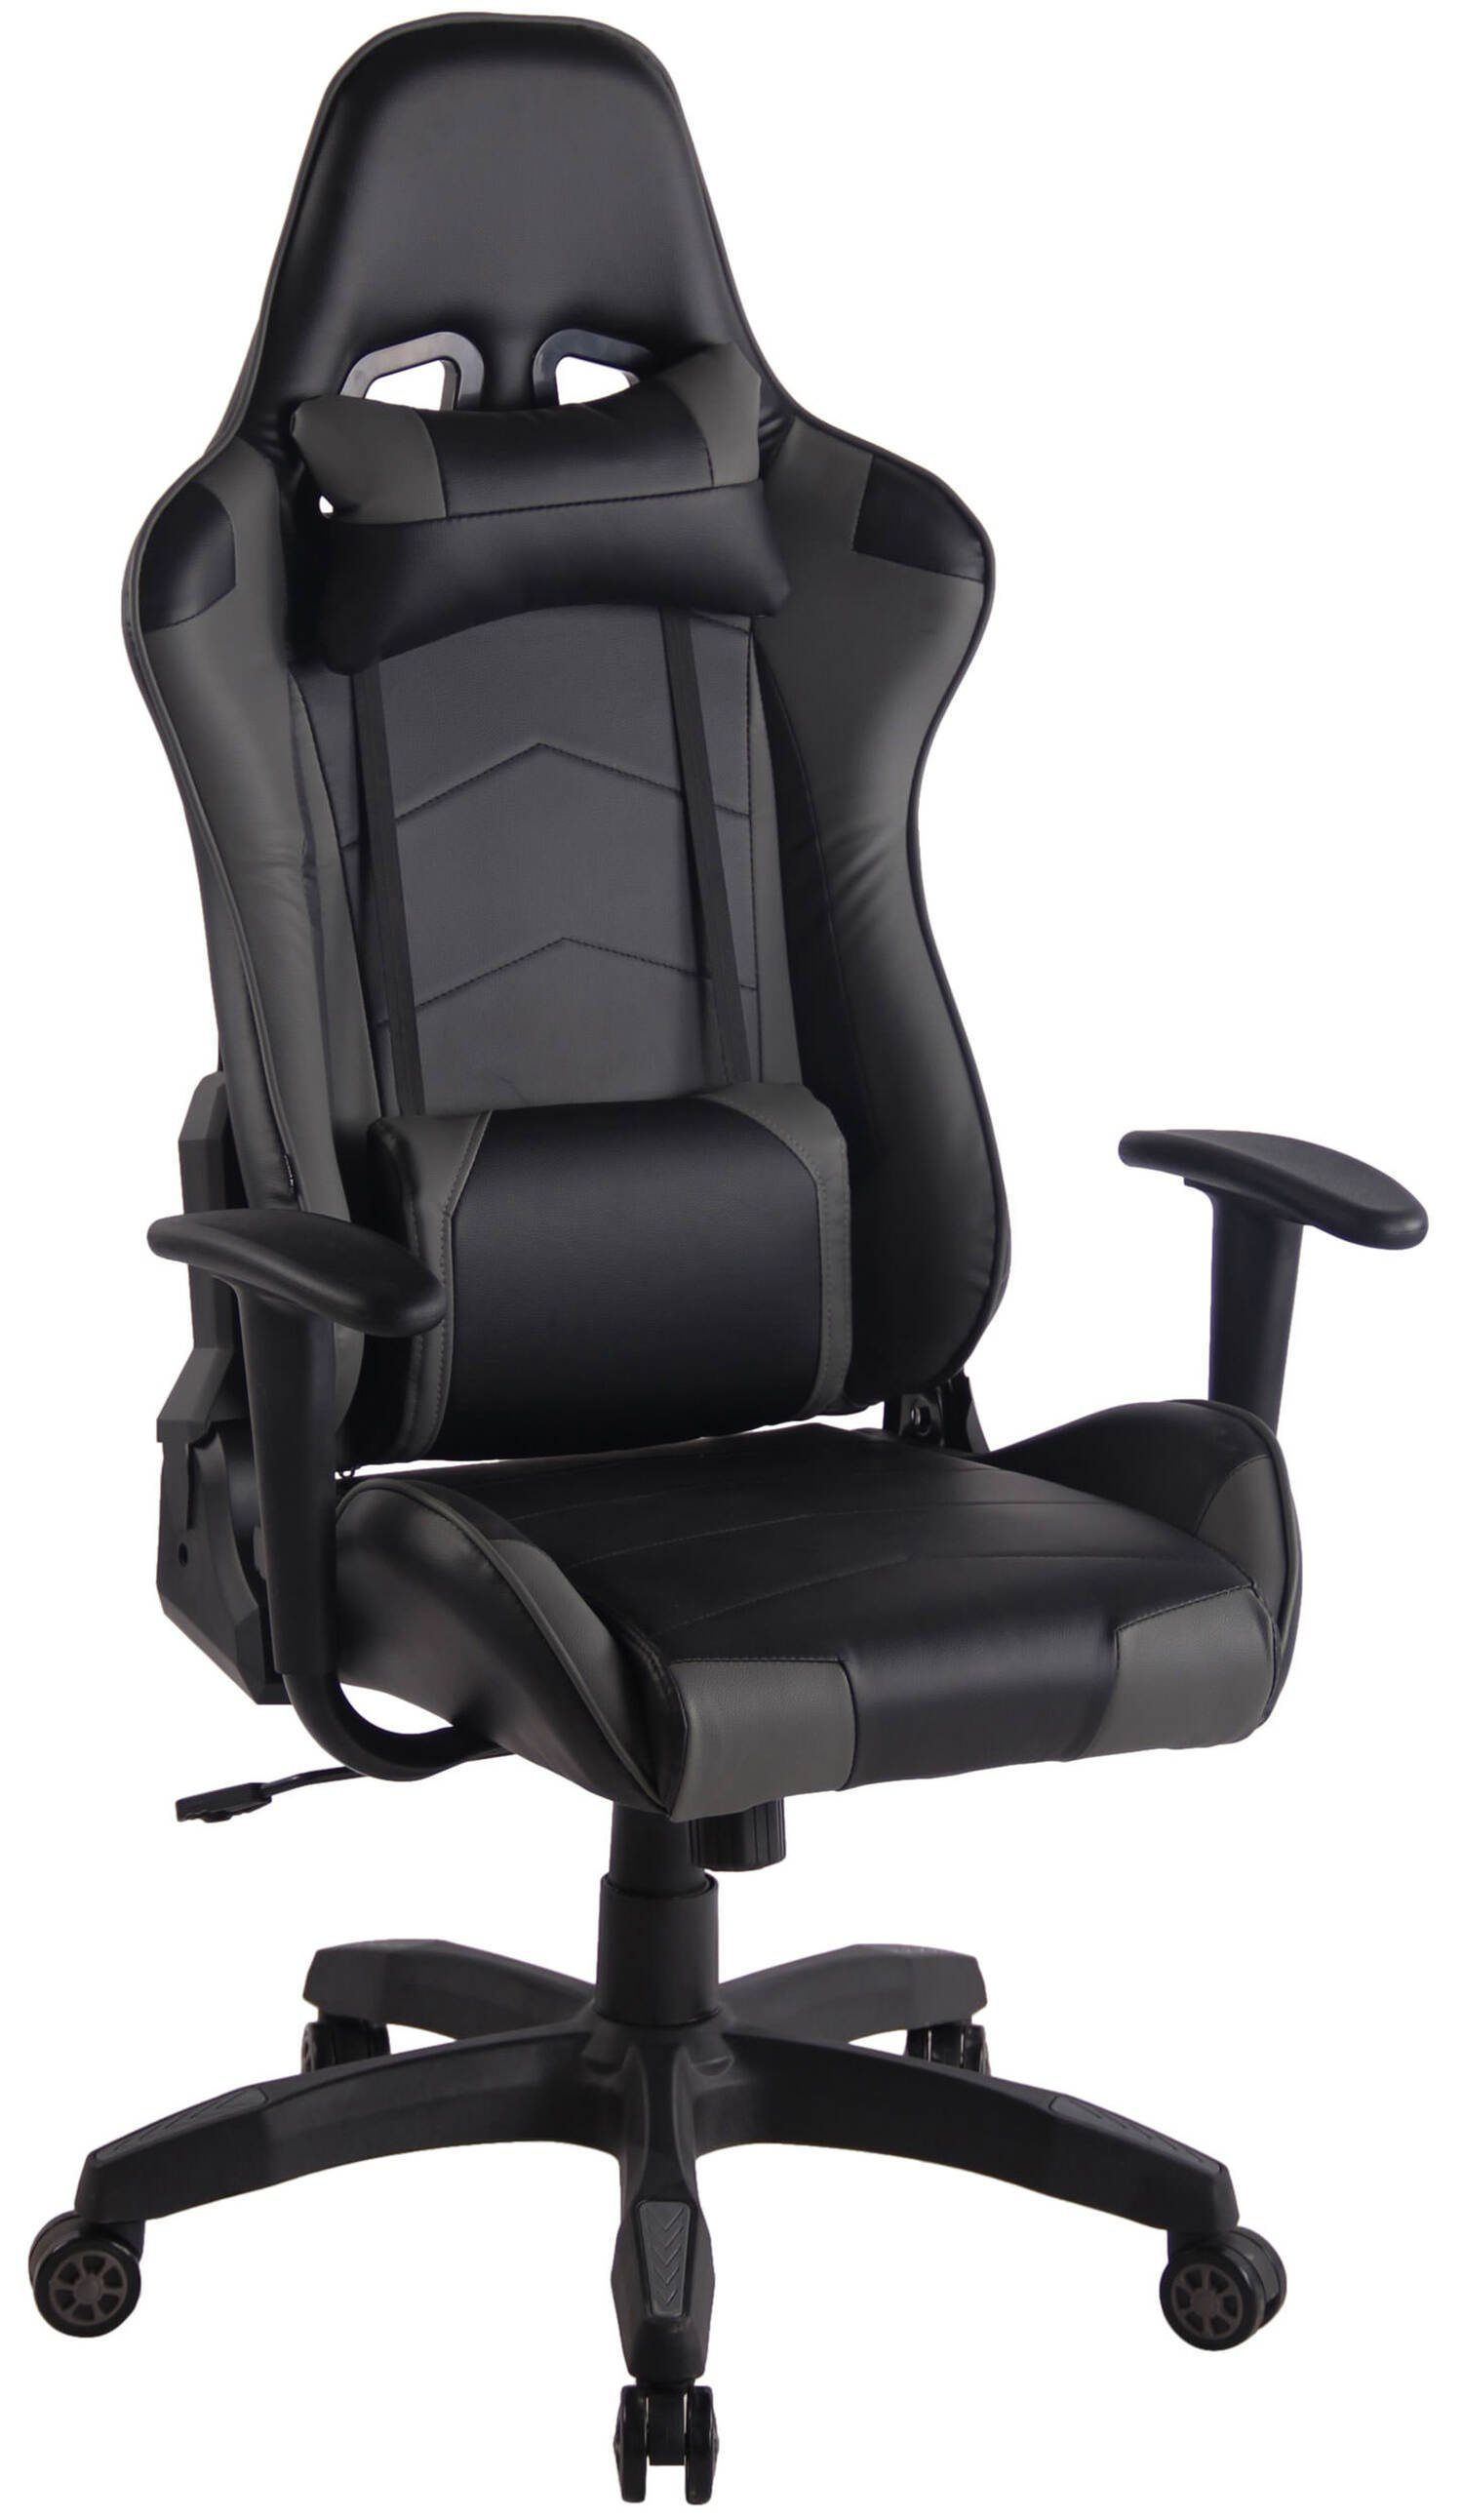 TPFLiving Gaming-Stuhl Mirage mit bequemer Rückenlehne - höhenverstellbar und 360° drehbar (Schreibtischstuhl, Drehstuhl, Gamingstuhl, Racingstuhl, Chefsessel), Gestell: Kunststoff schwarz - Sitzfläche: Kunstleder schwarz/grau